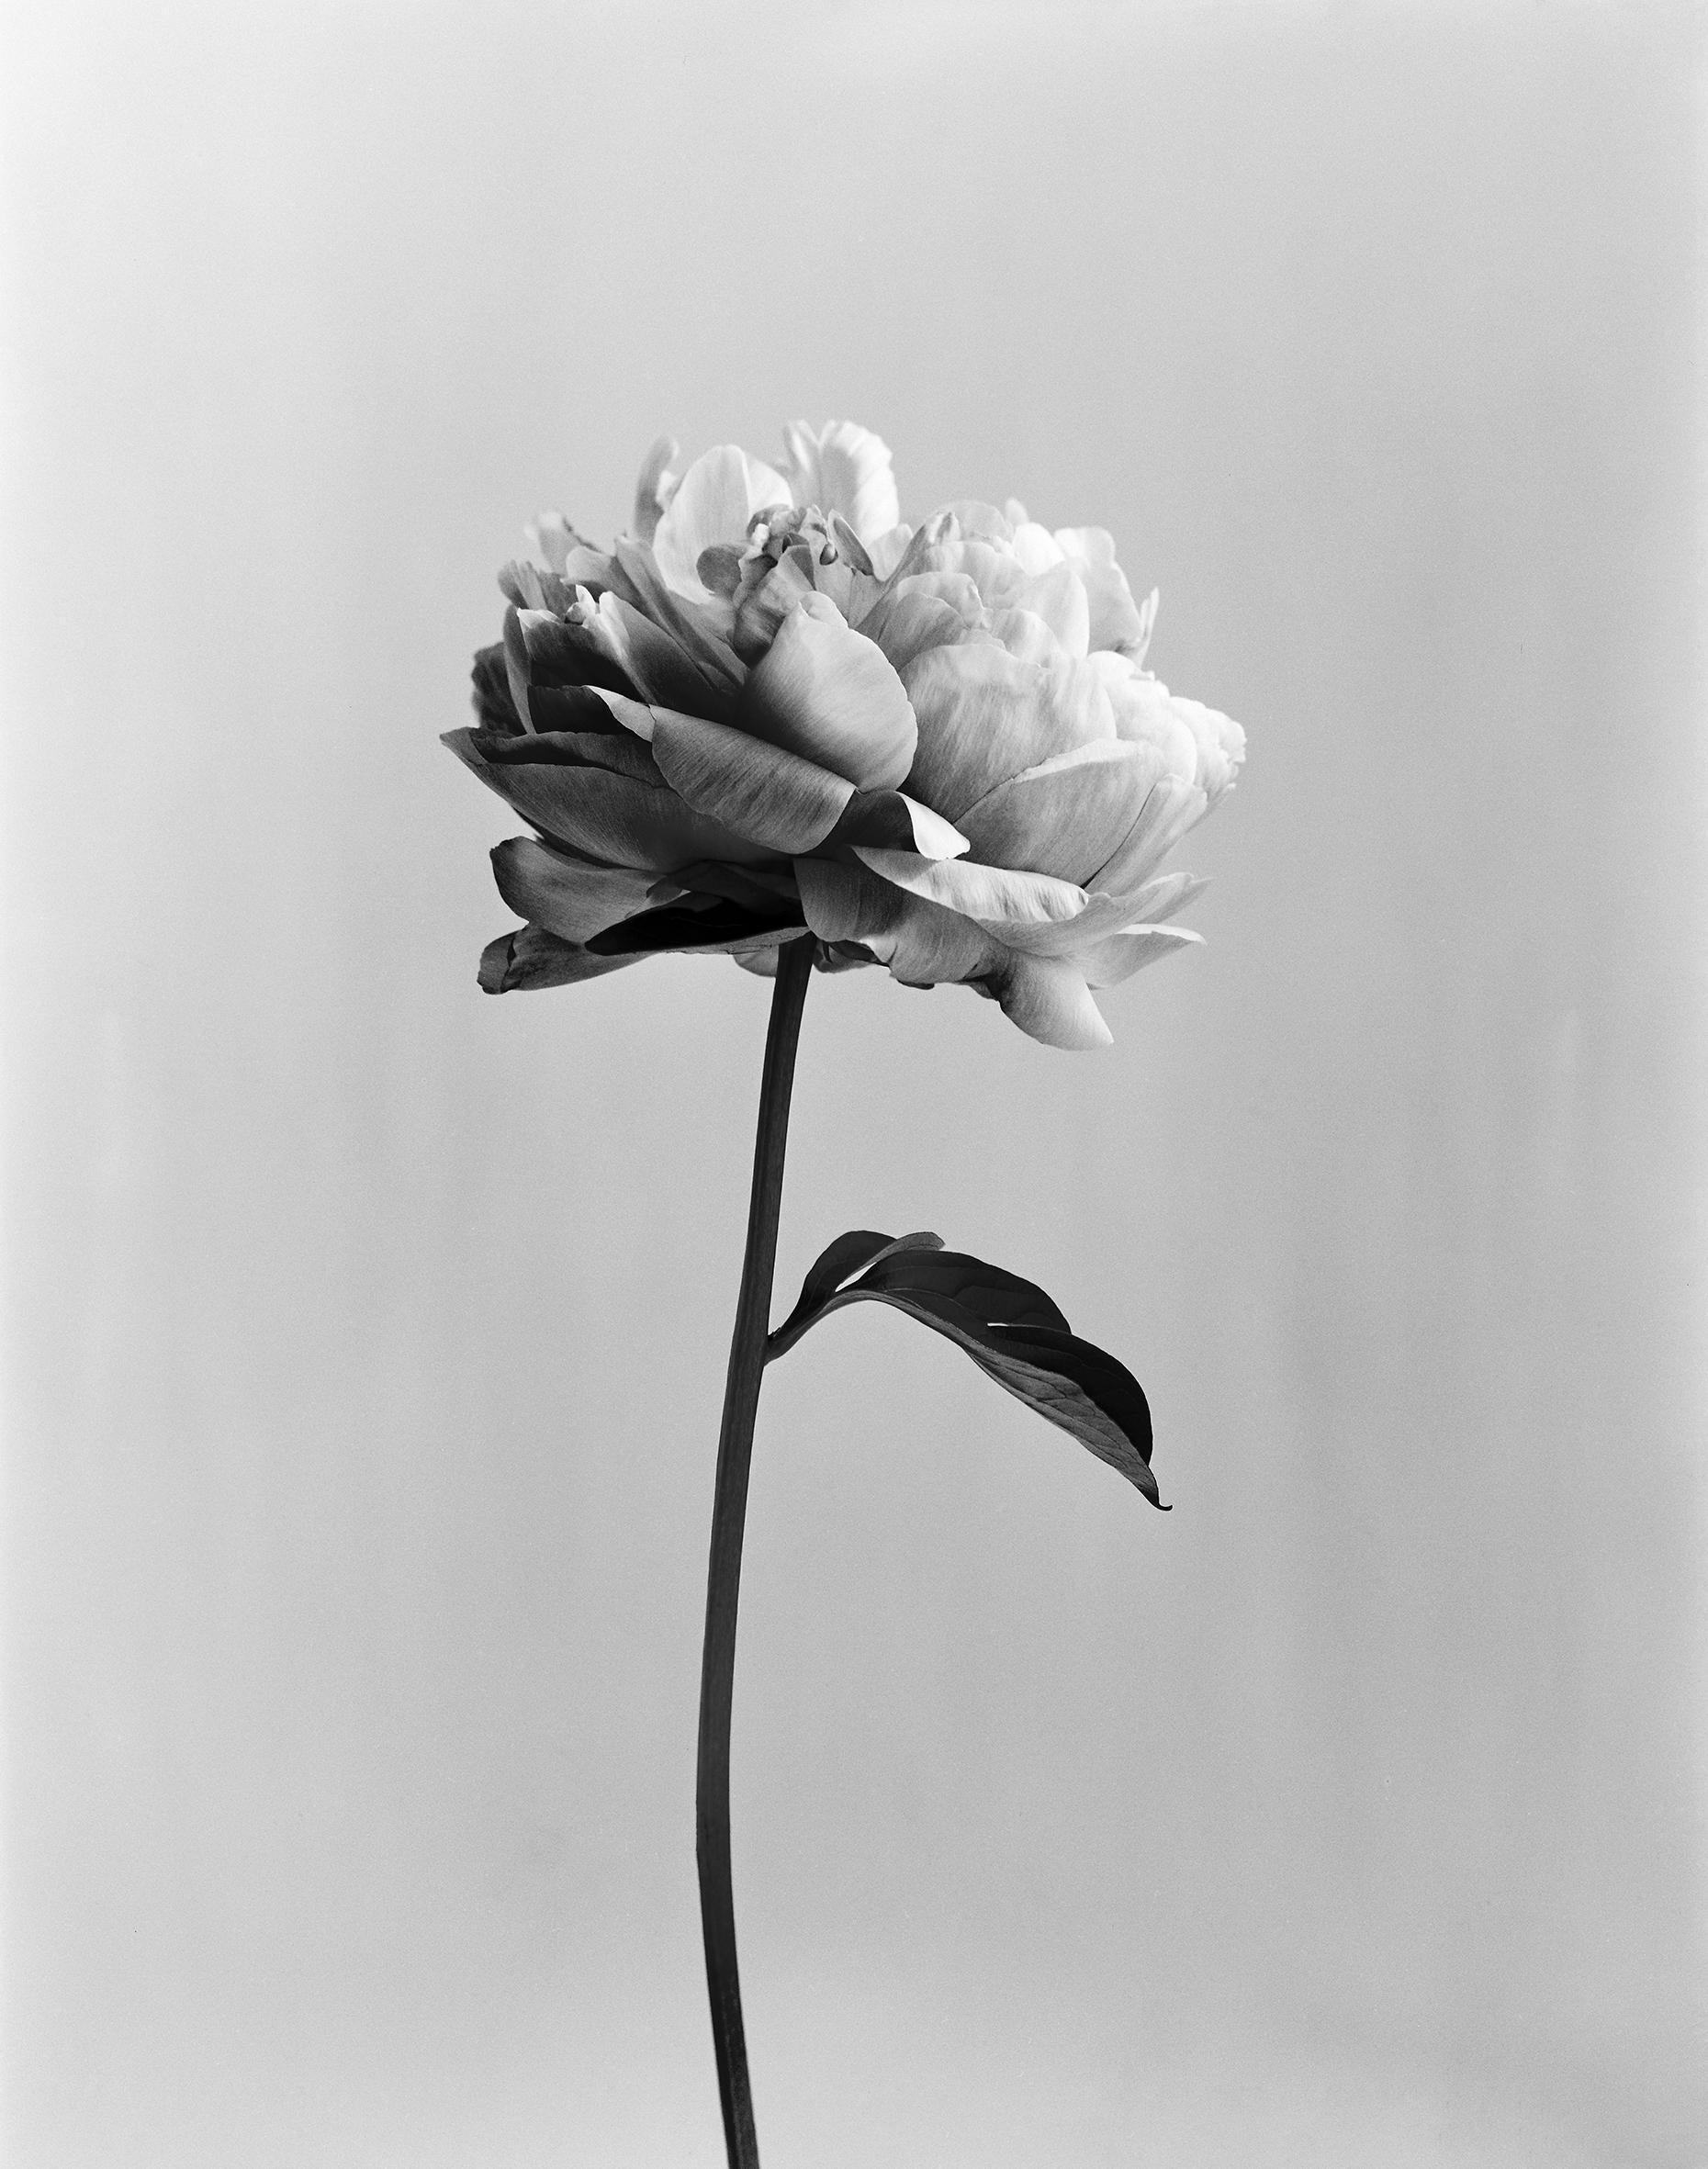 Pivoine n°3 - photographie florale analogique en noir et blanc, édition limitée à 20 exemplaires